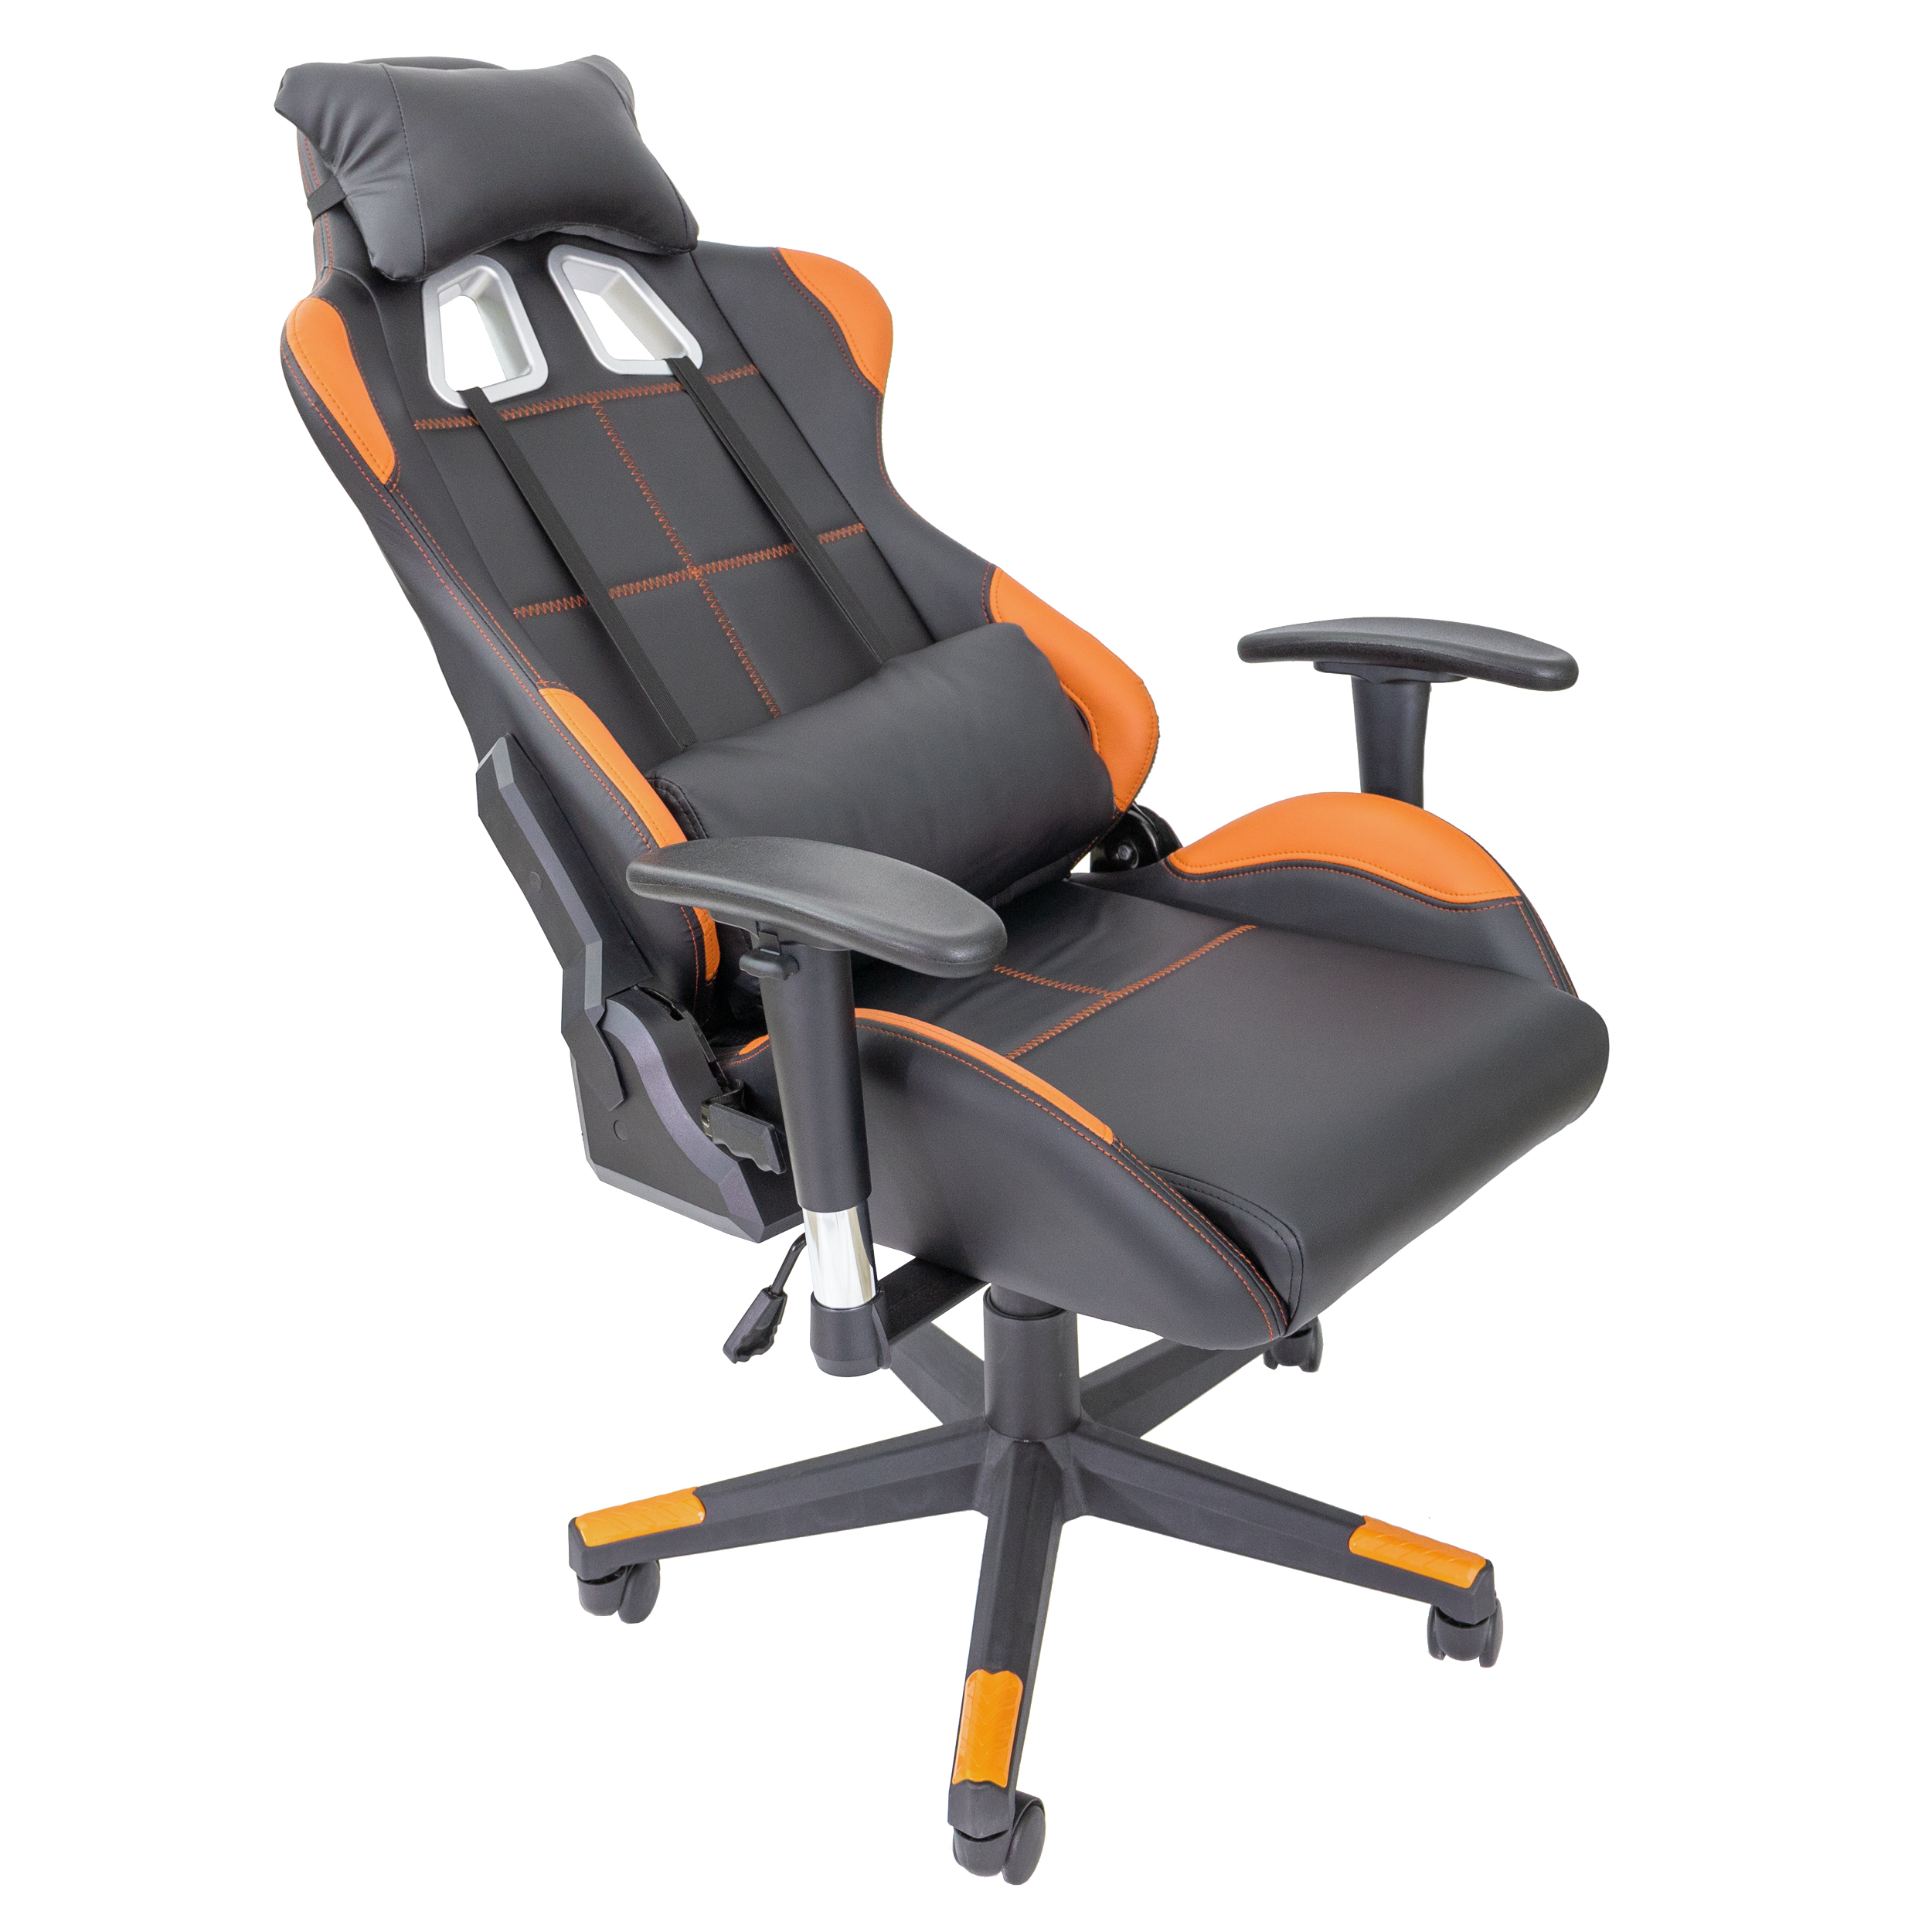 TPFLIVING Gaming Fire schwarz/orange Stuhl Chair, Gaming